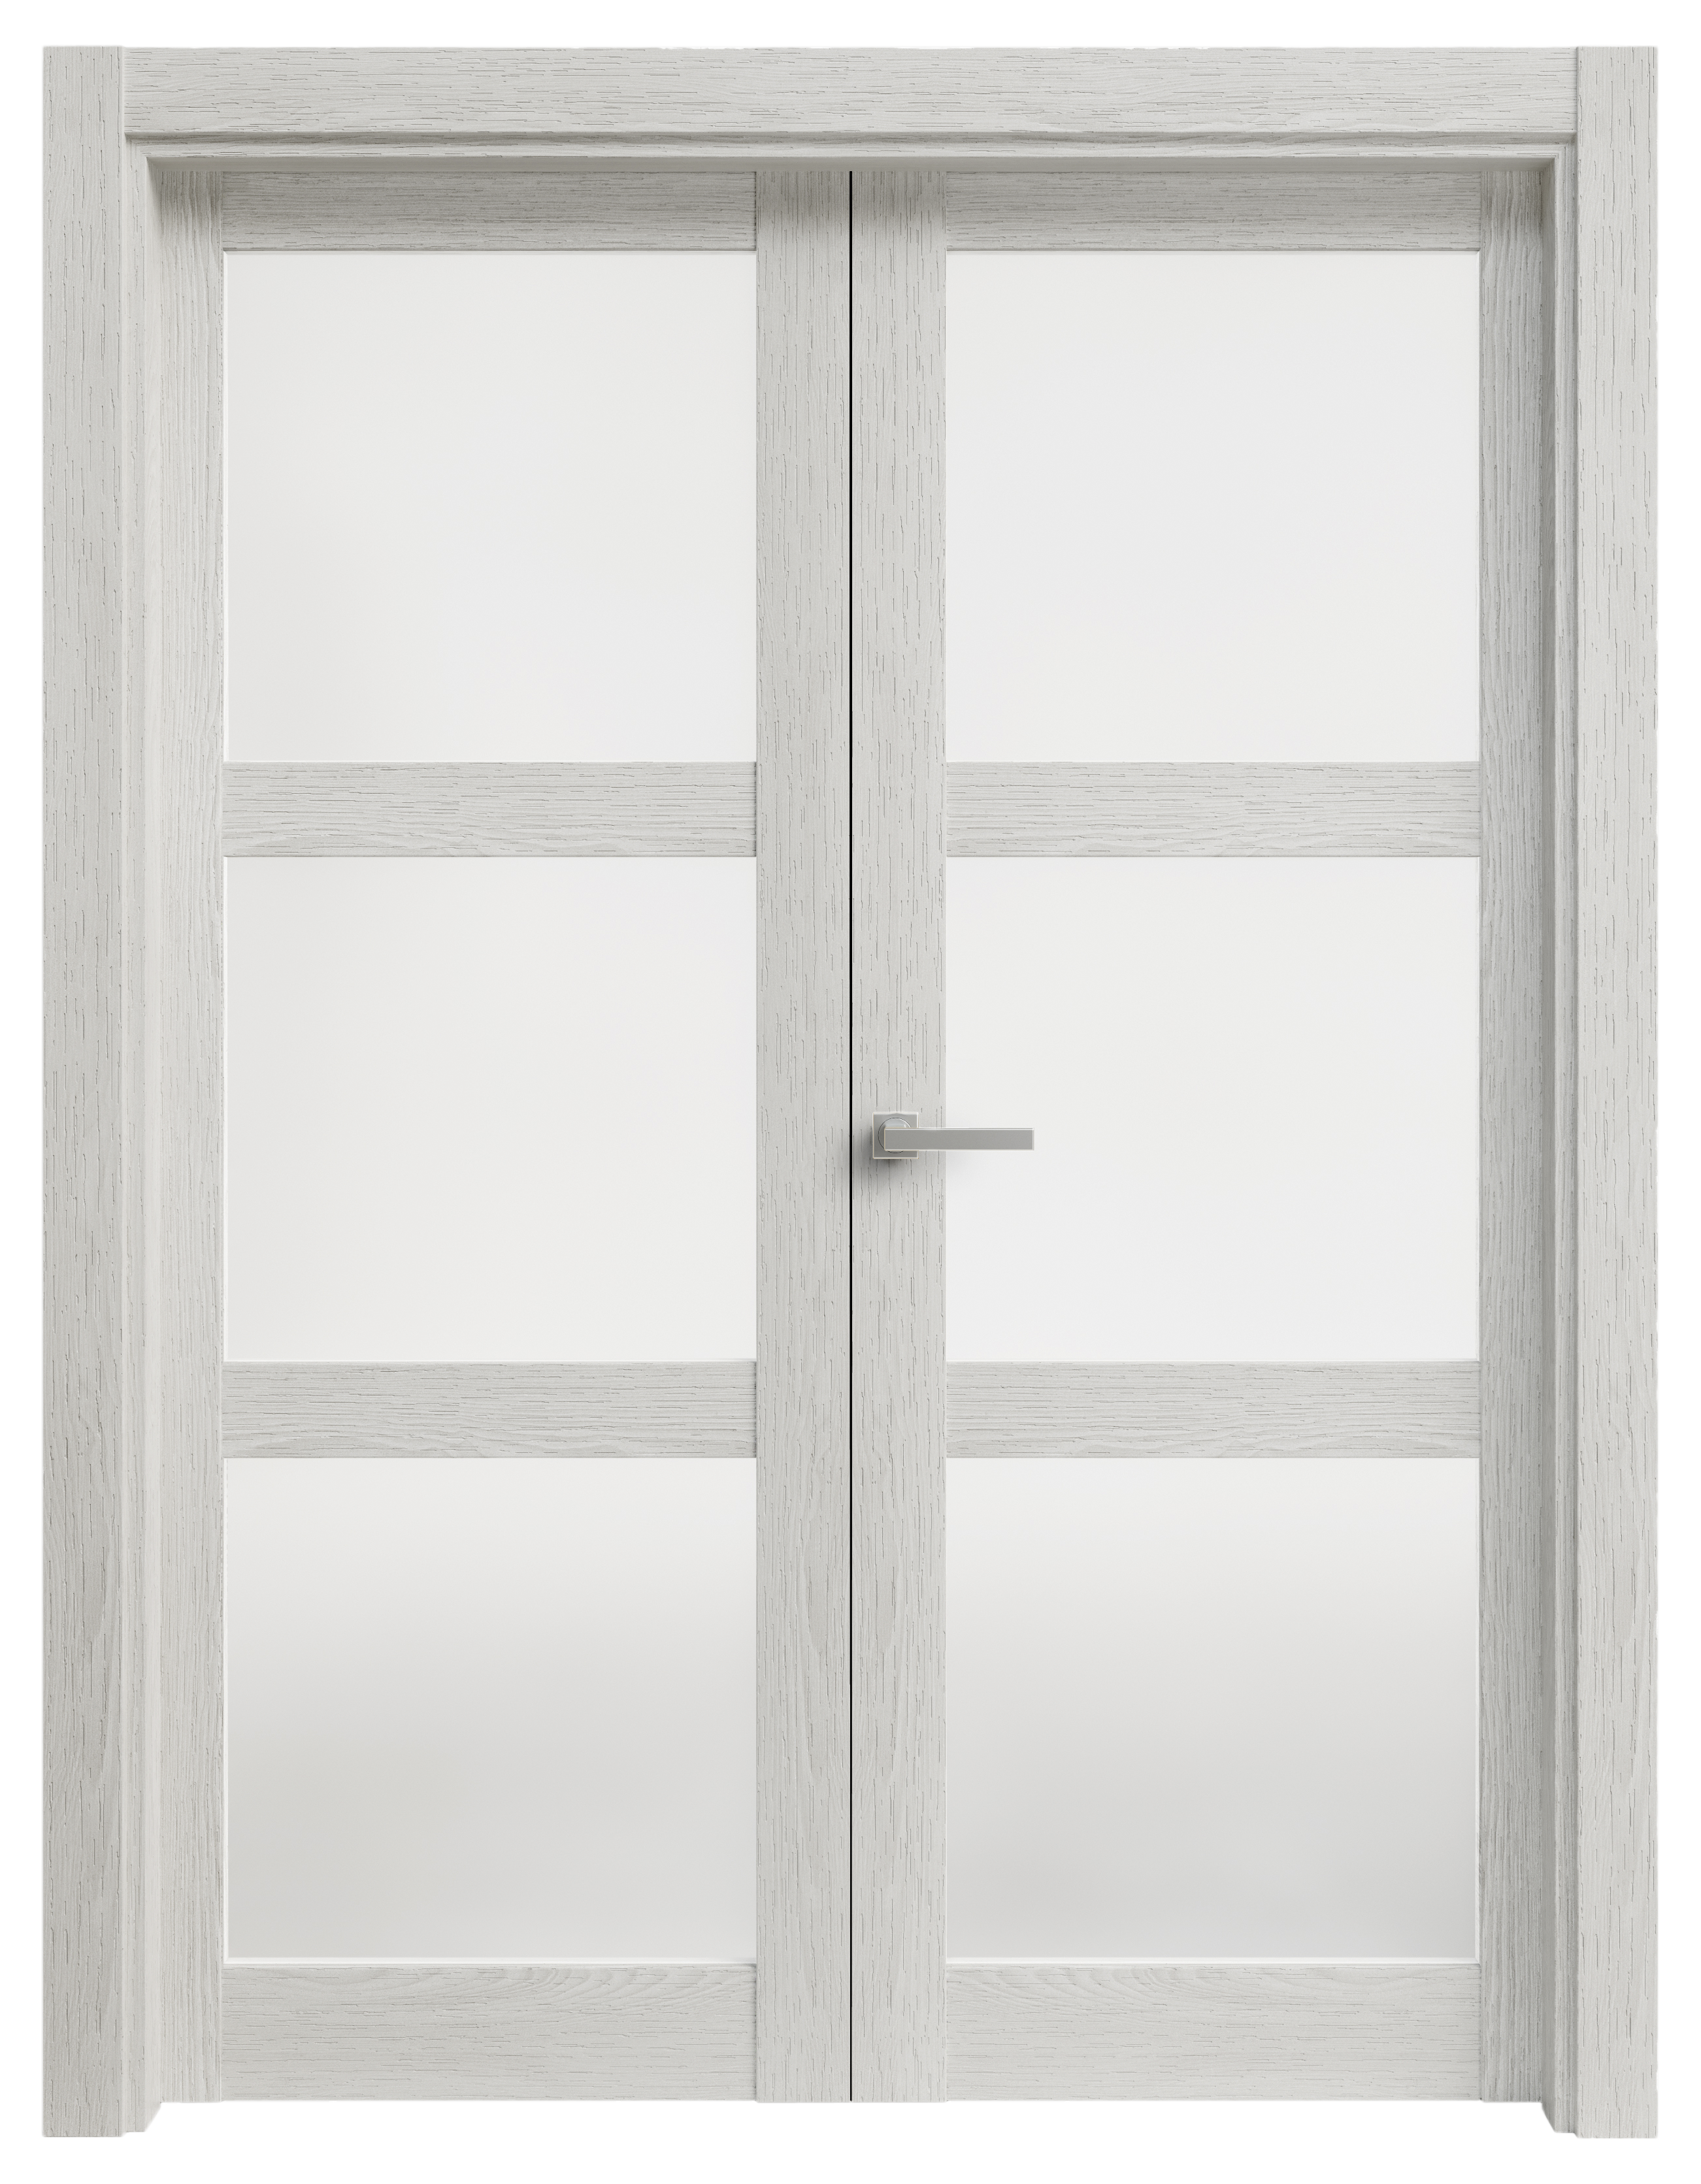 Puerta abatible moscu blanca line plus con cristal blanco izquierda de 125 c